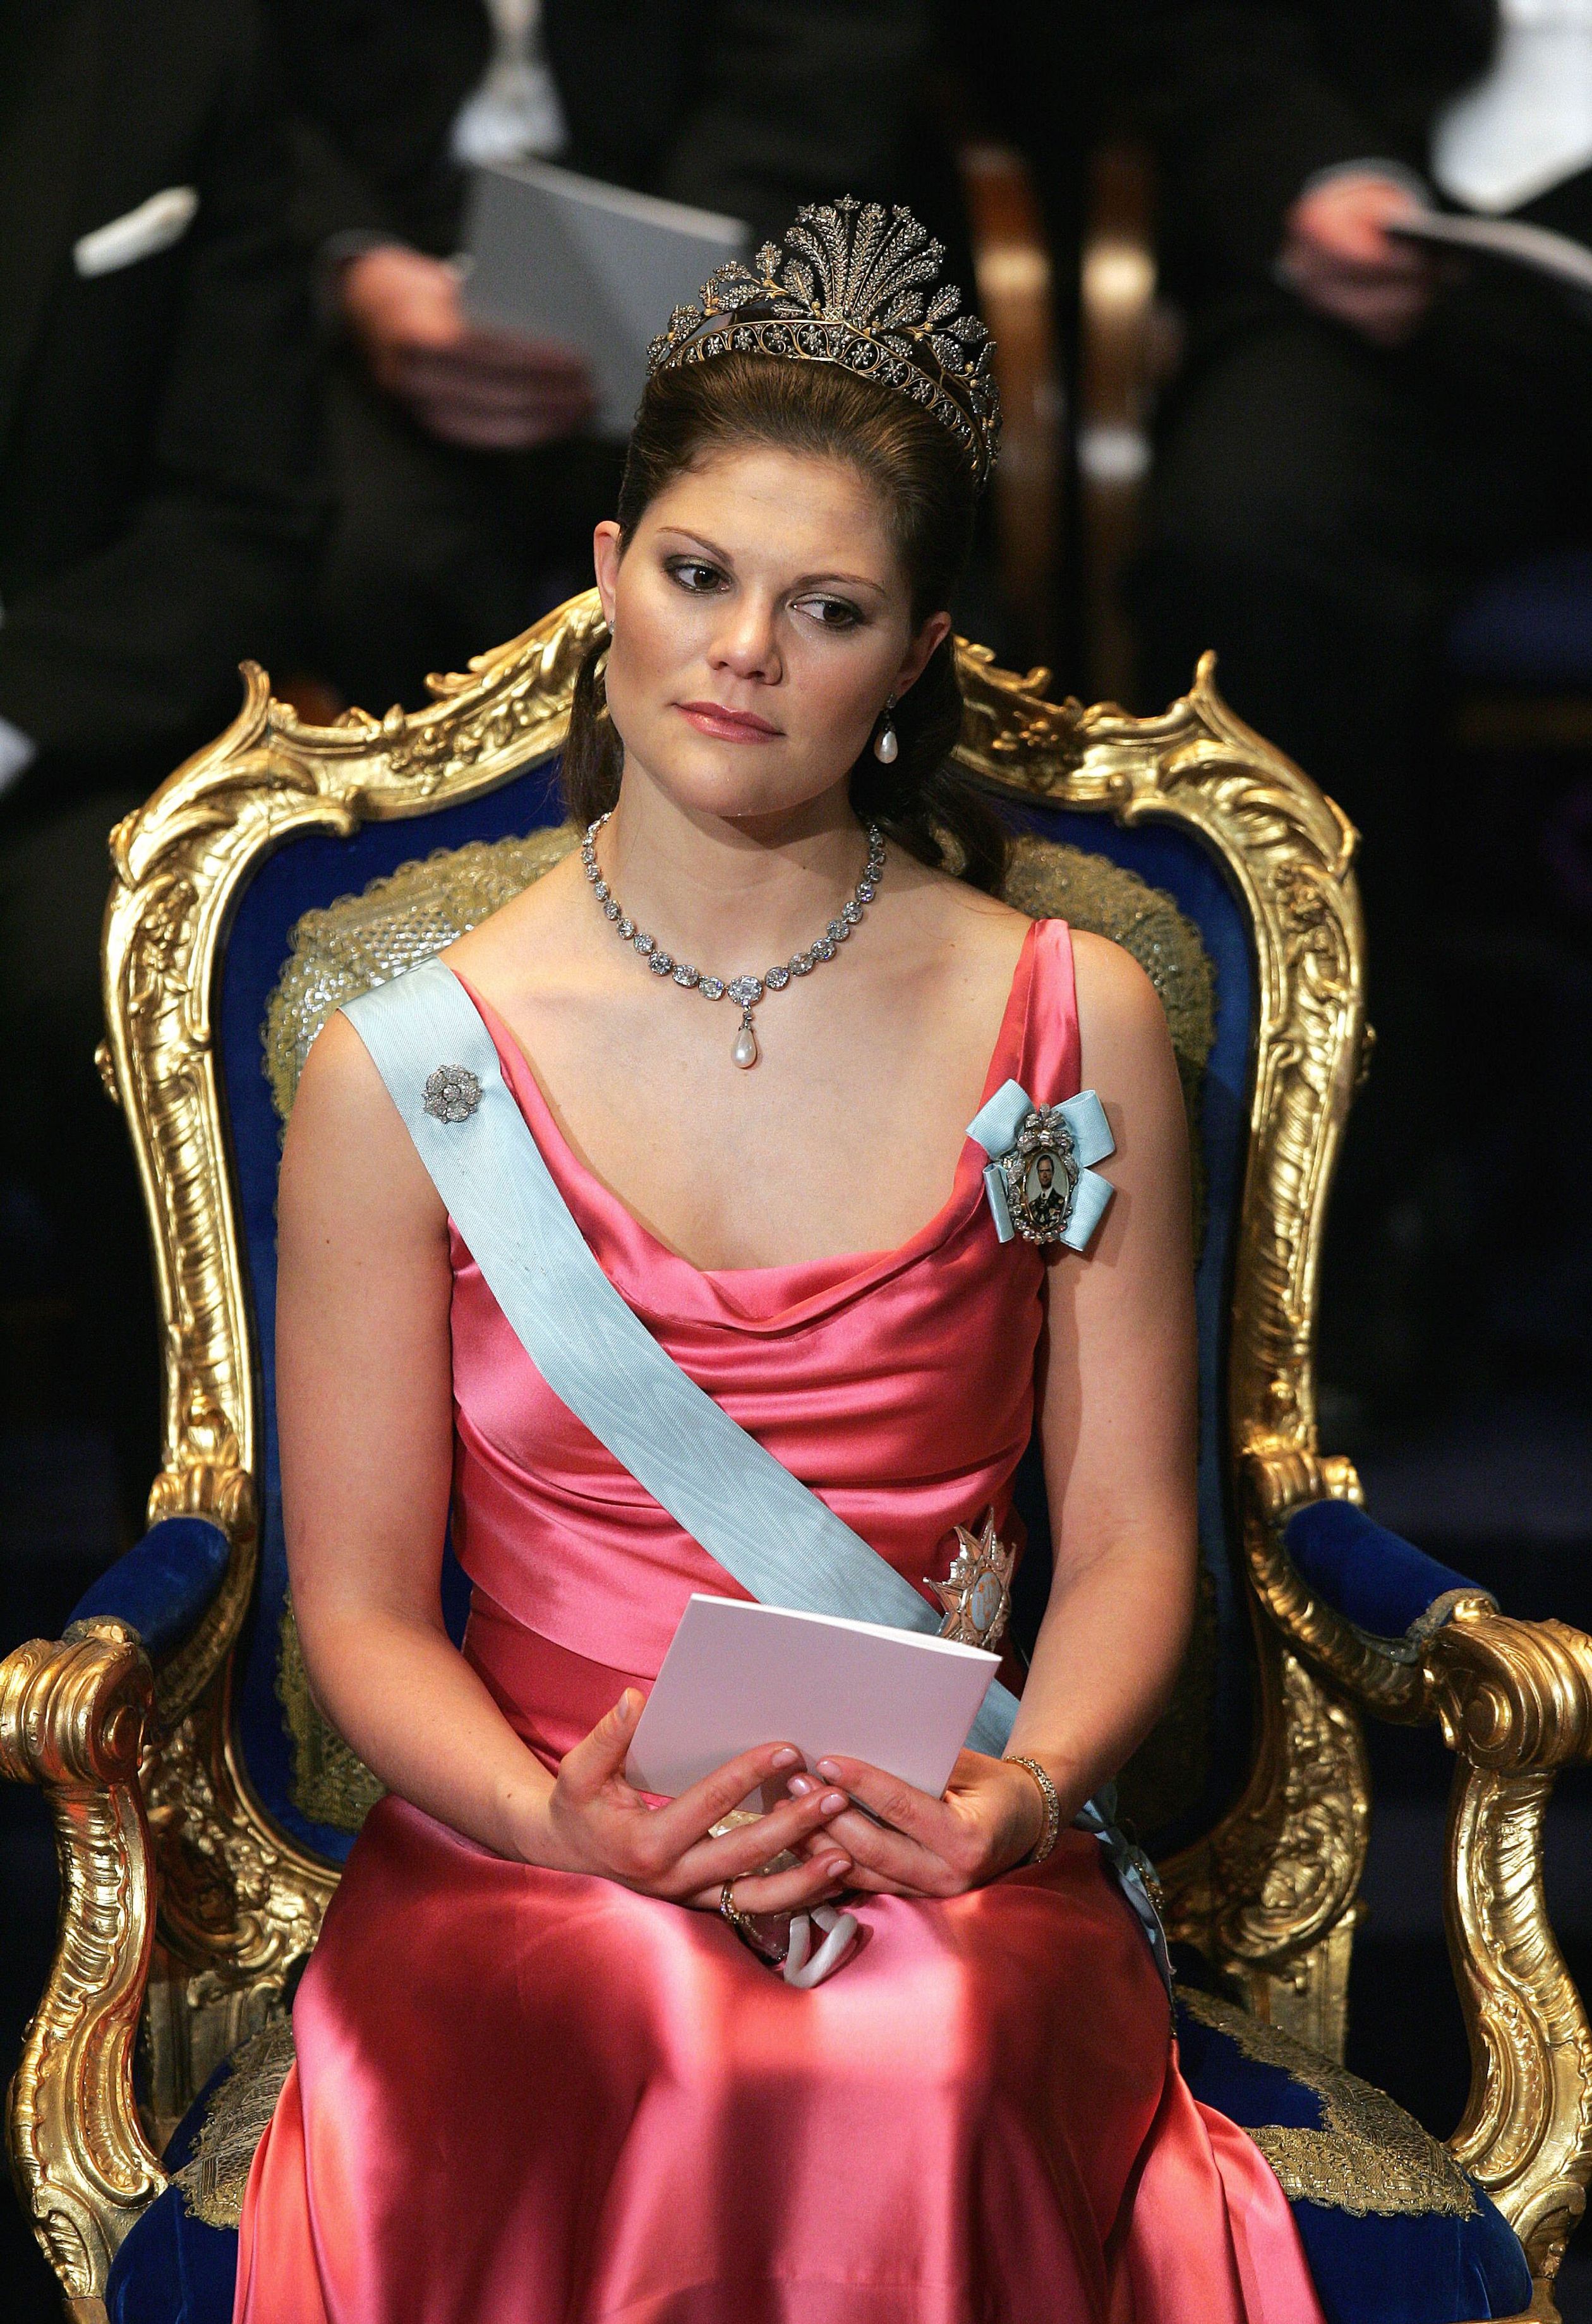 'Mooi roze is niet lelijk', dacht kroonprinses Victoria in 2004. Ze combineert haar jurk met de